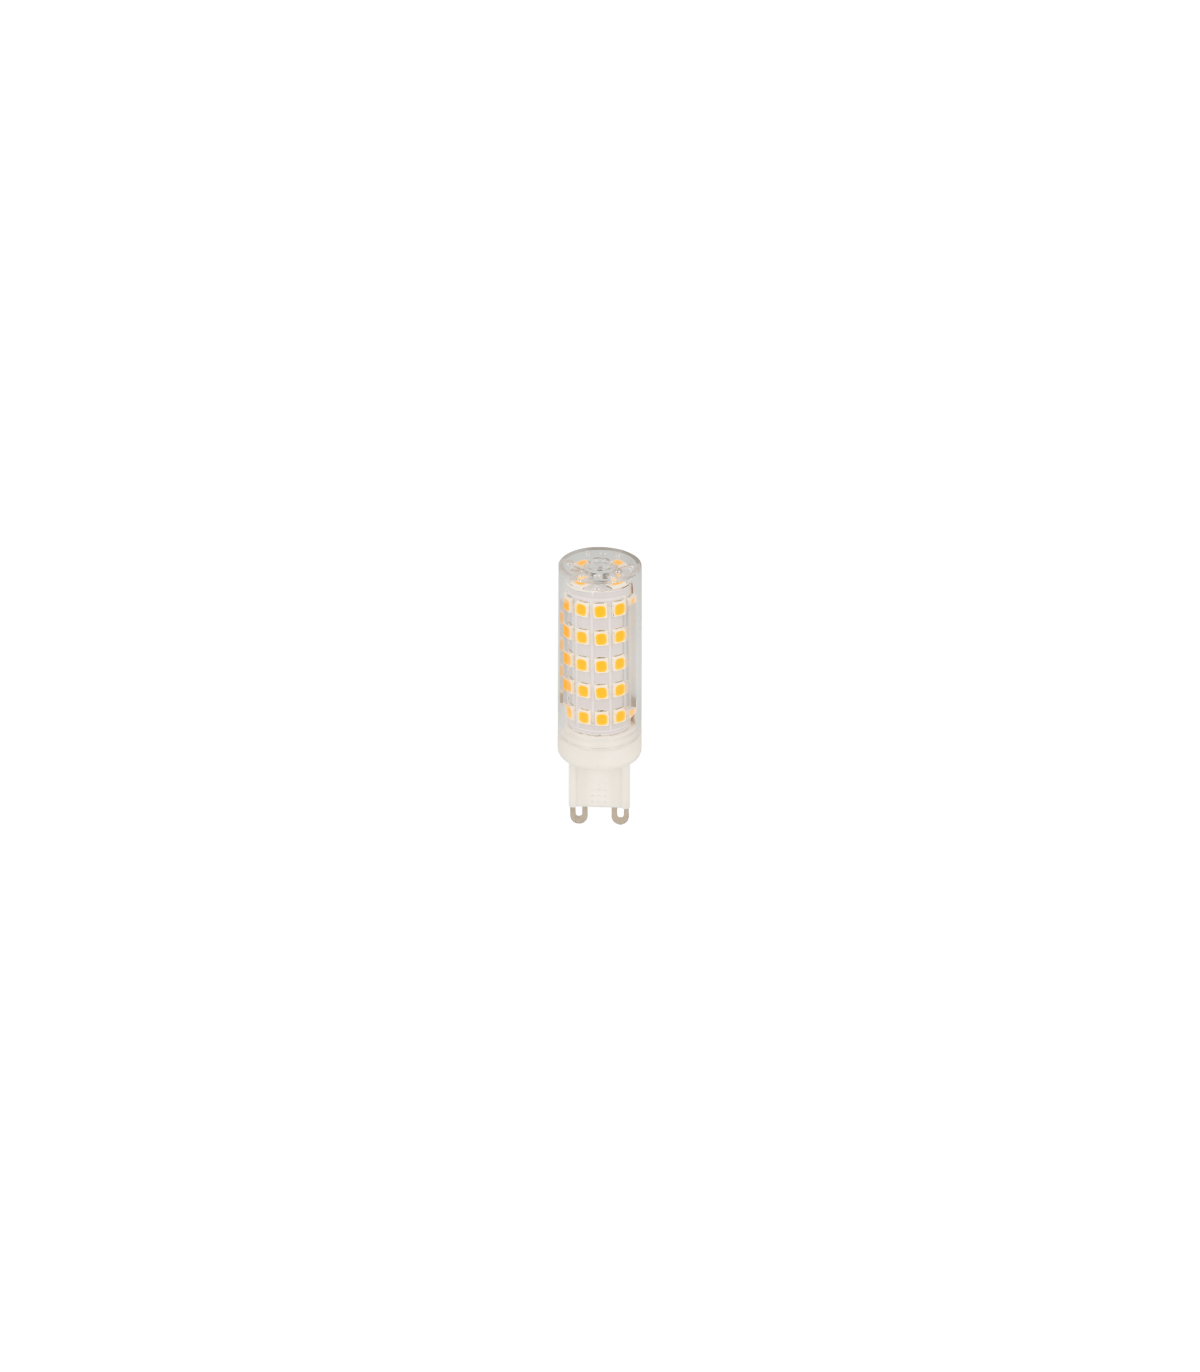 Ampoule LED G9 3000K blanc chaud 3W, ampoule LED à douille G9 à deux  broches (équivalent